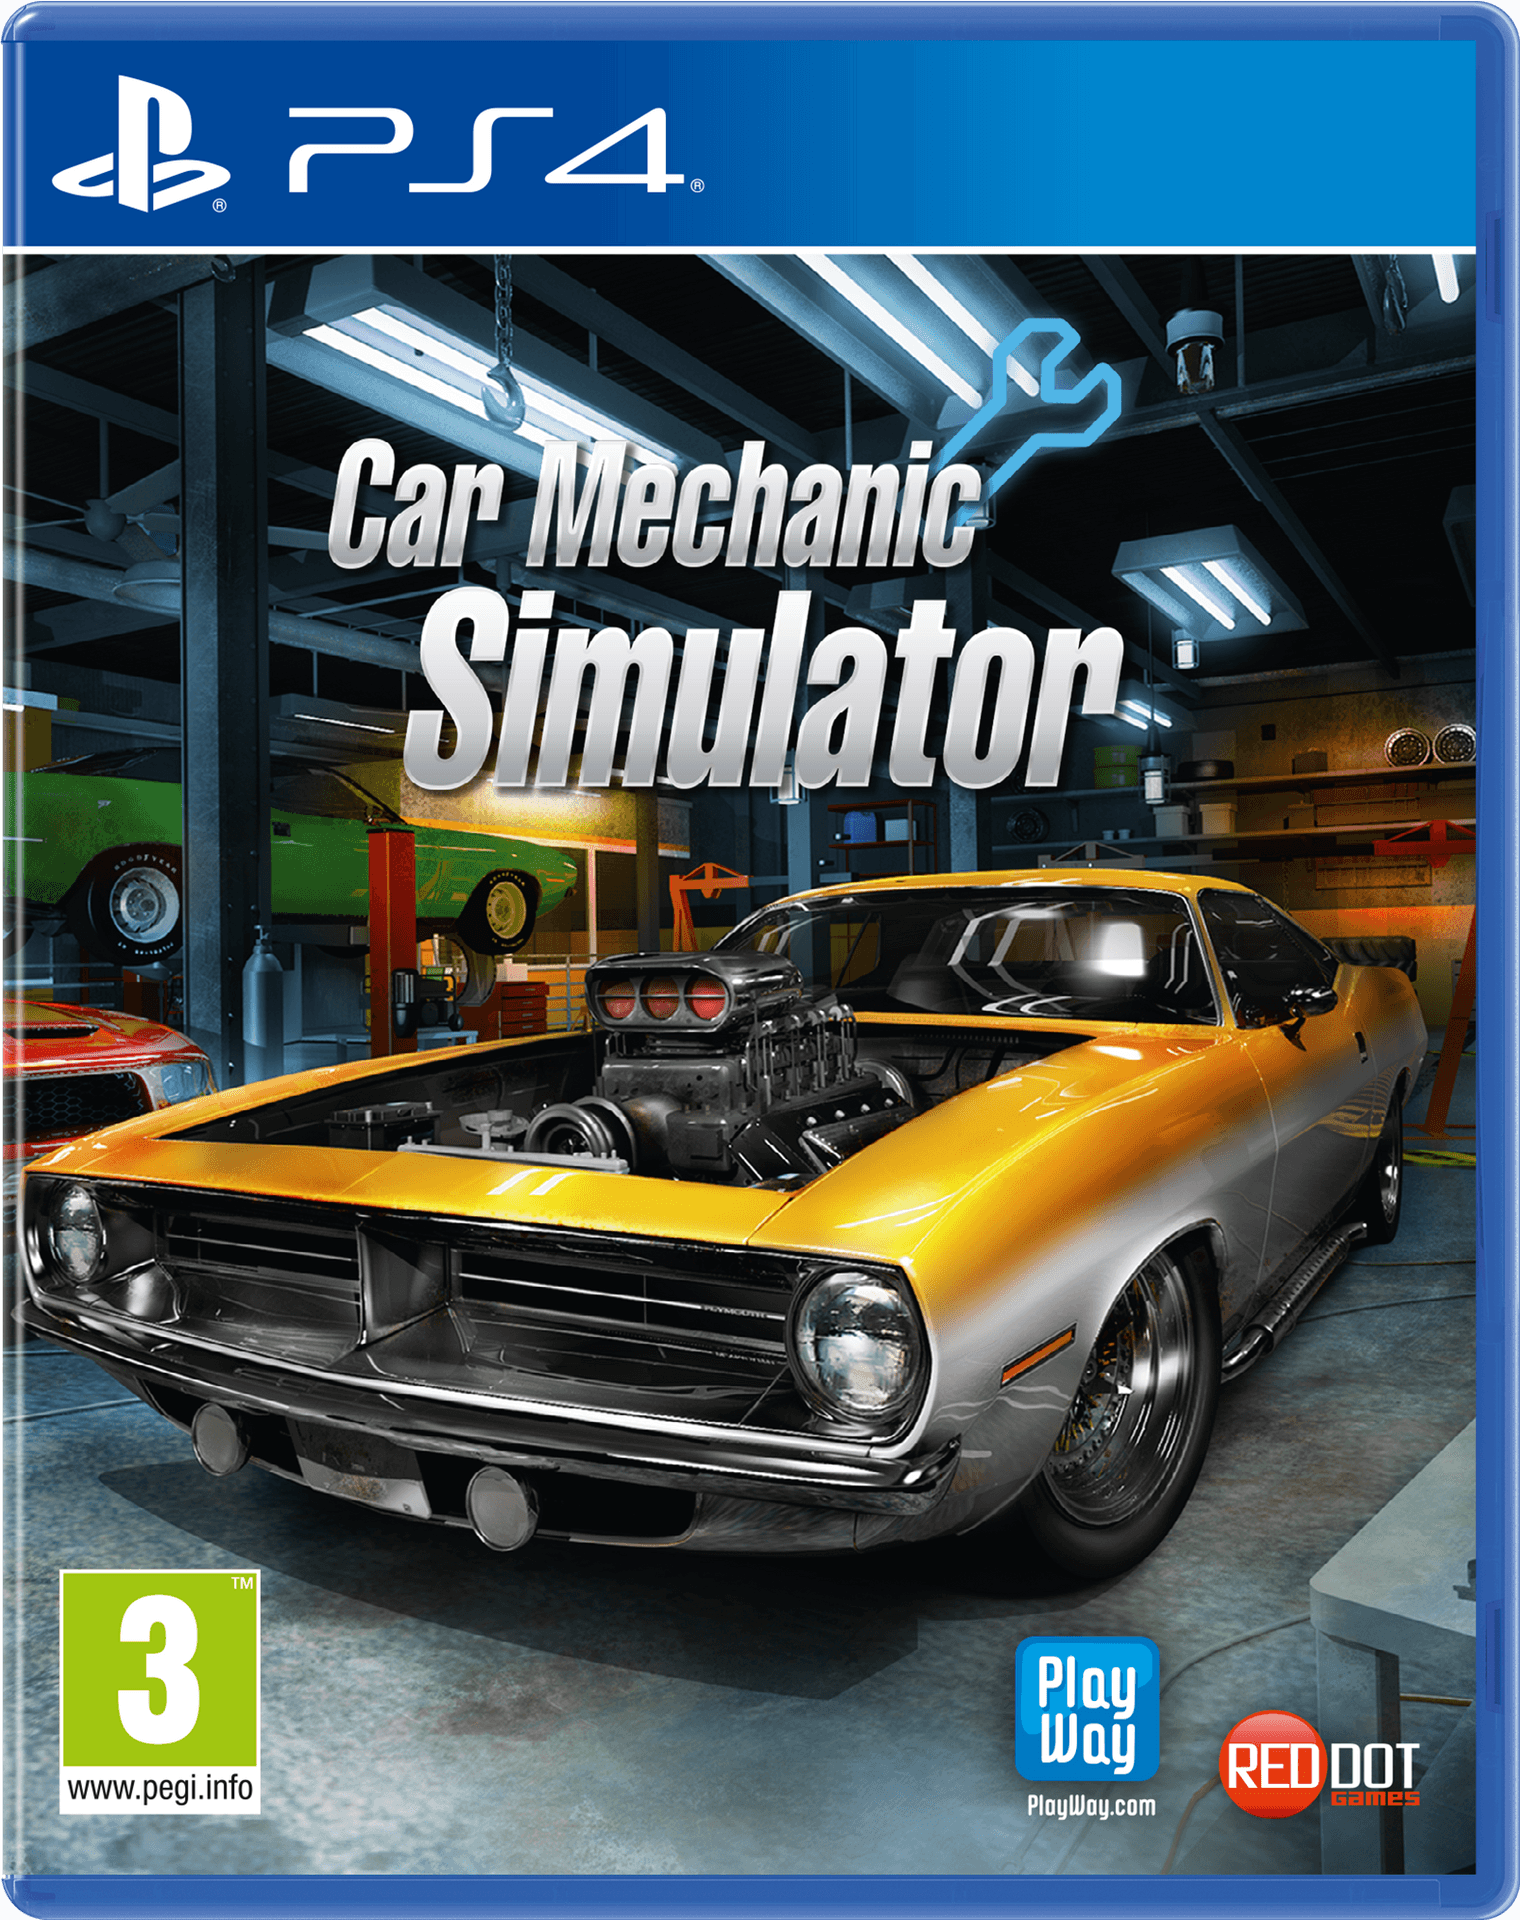 Car Mechanic Simulator P S4 Cover Art PNG